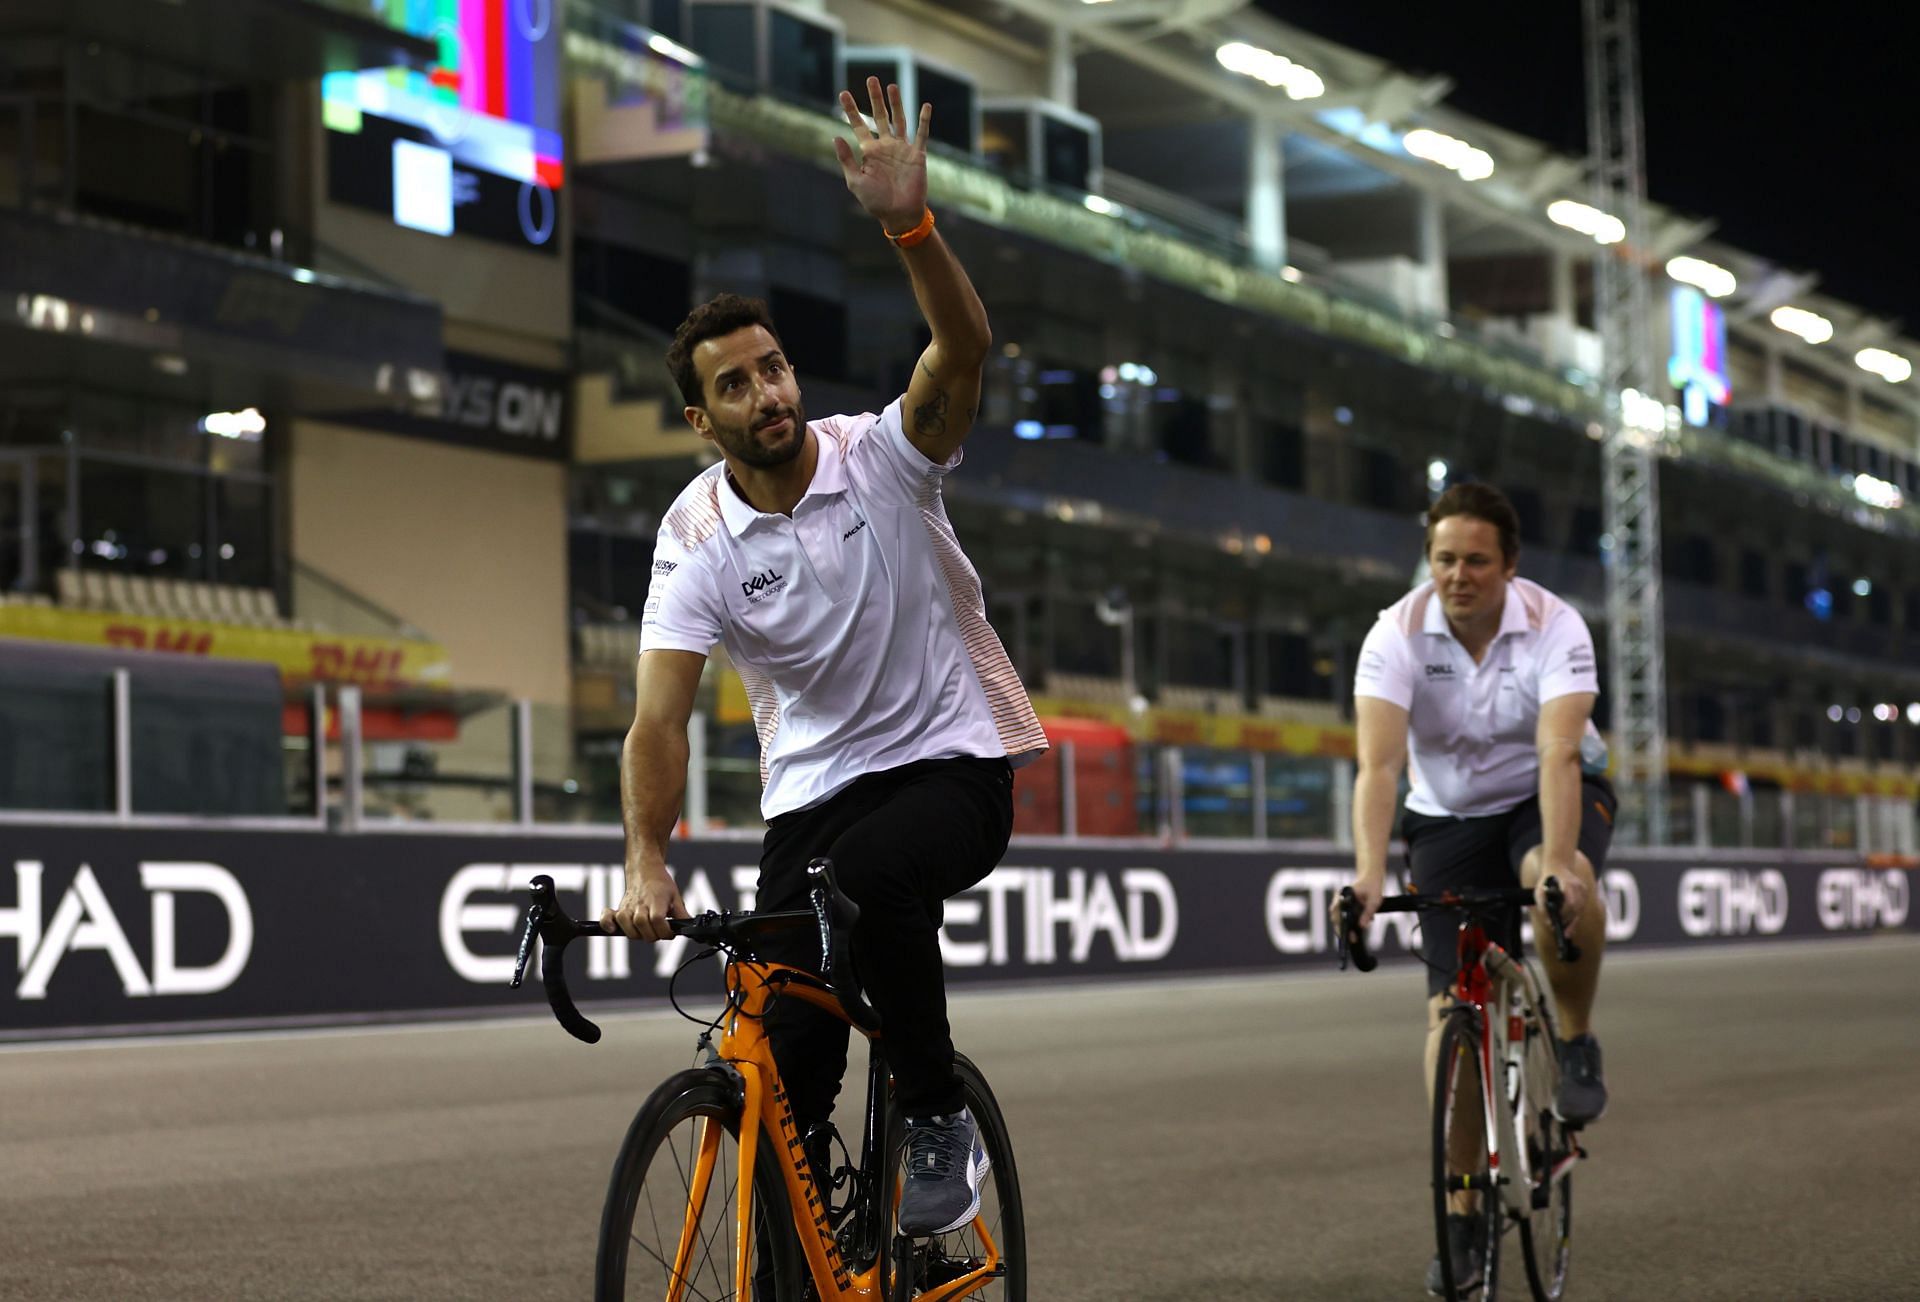 Daniel Ricciardo will be making a return to the grid in Bahrain